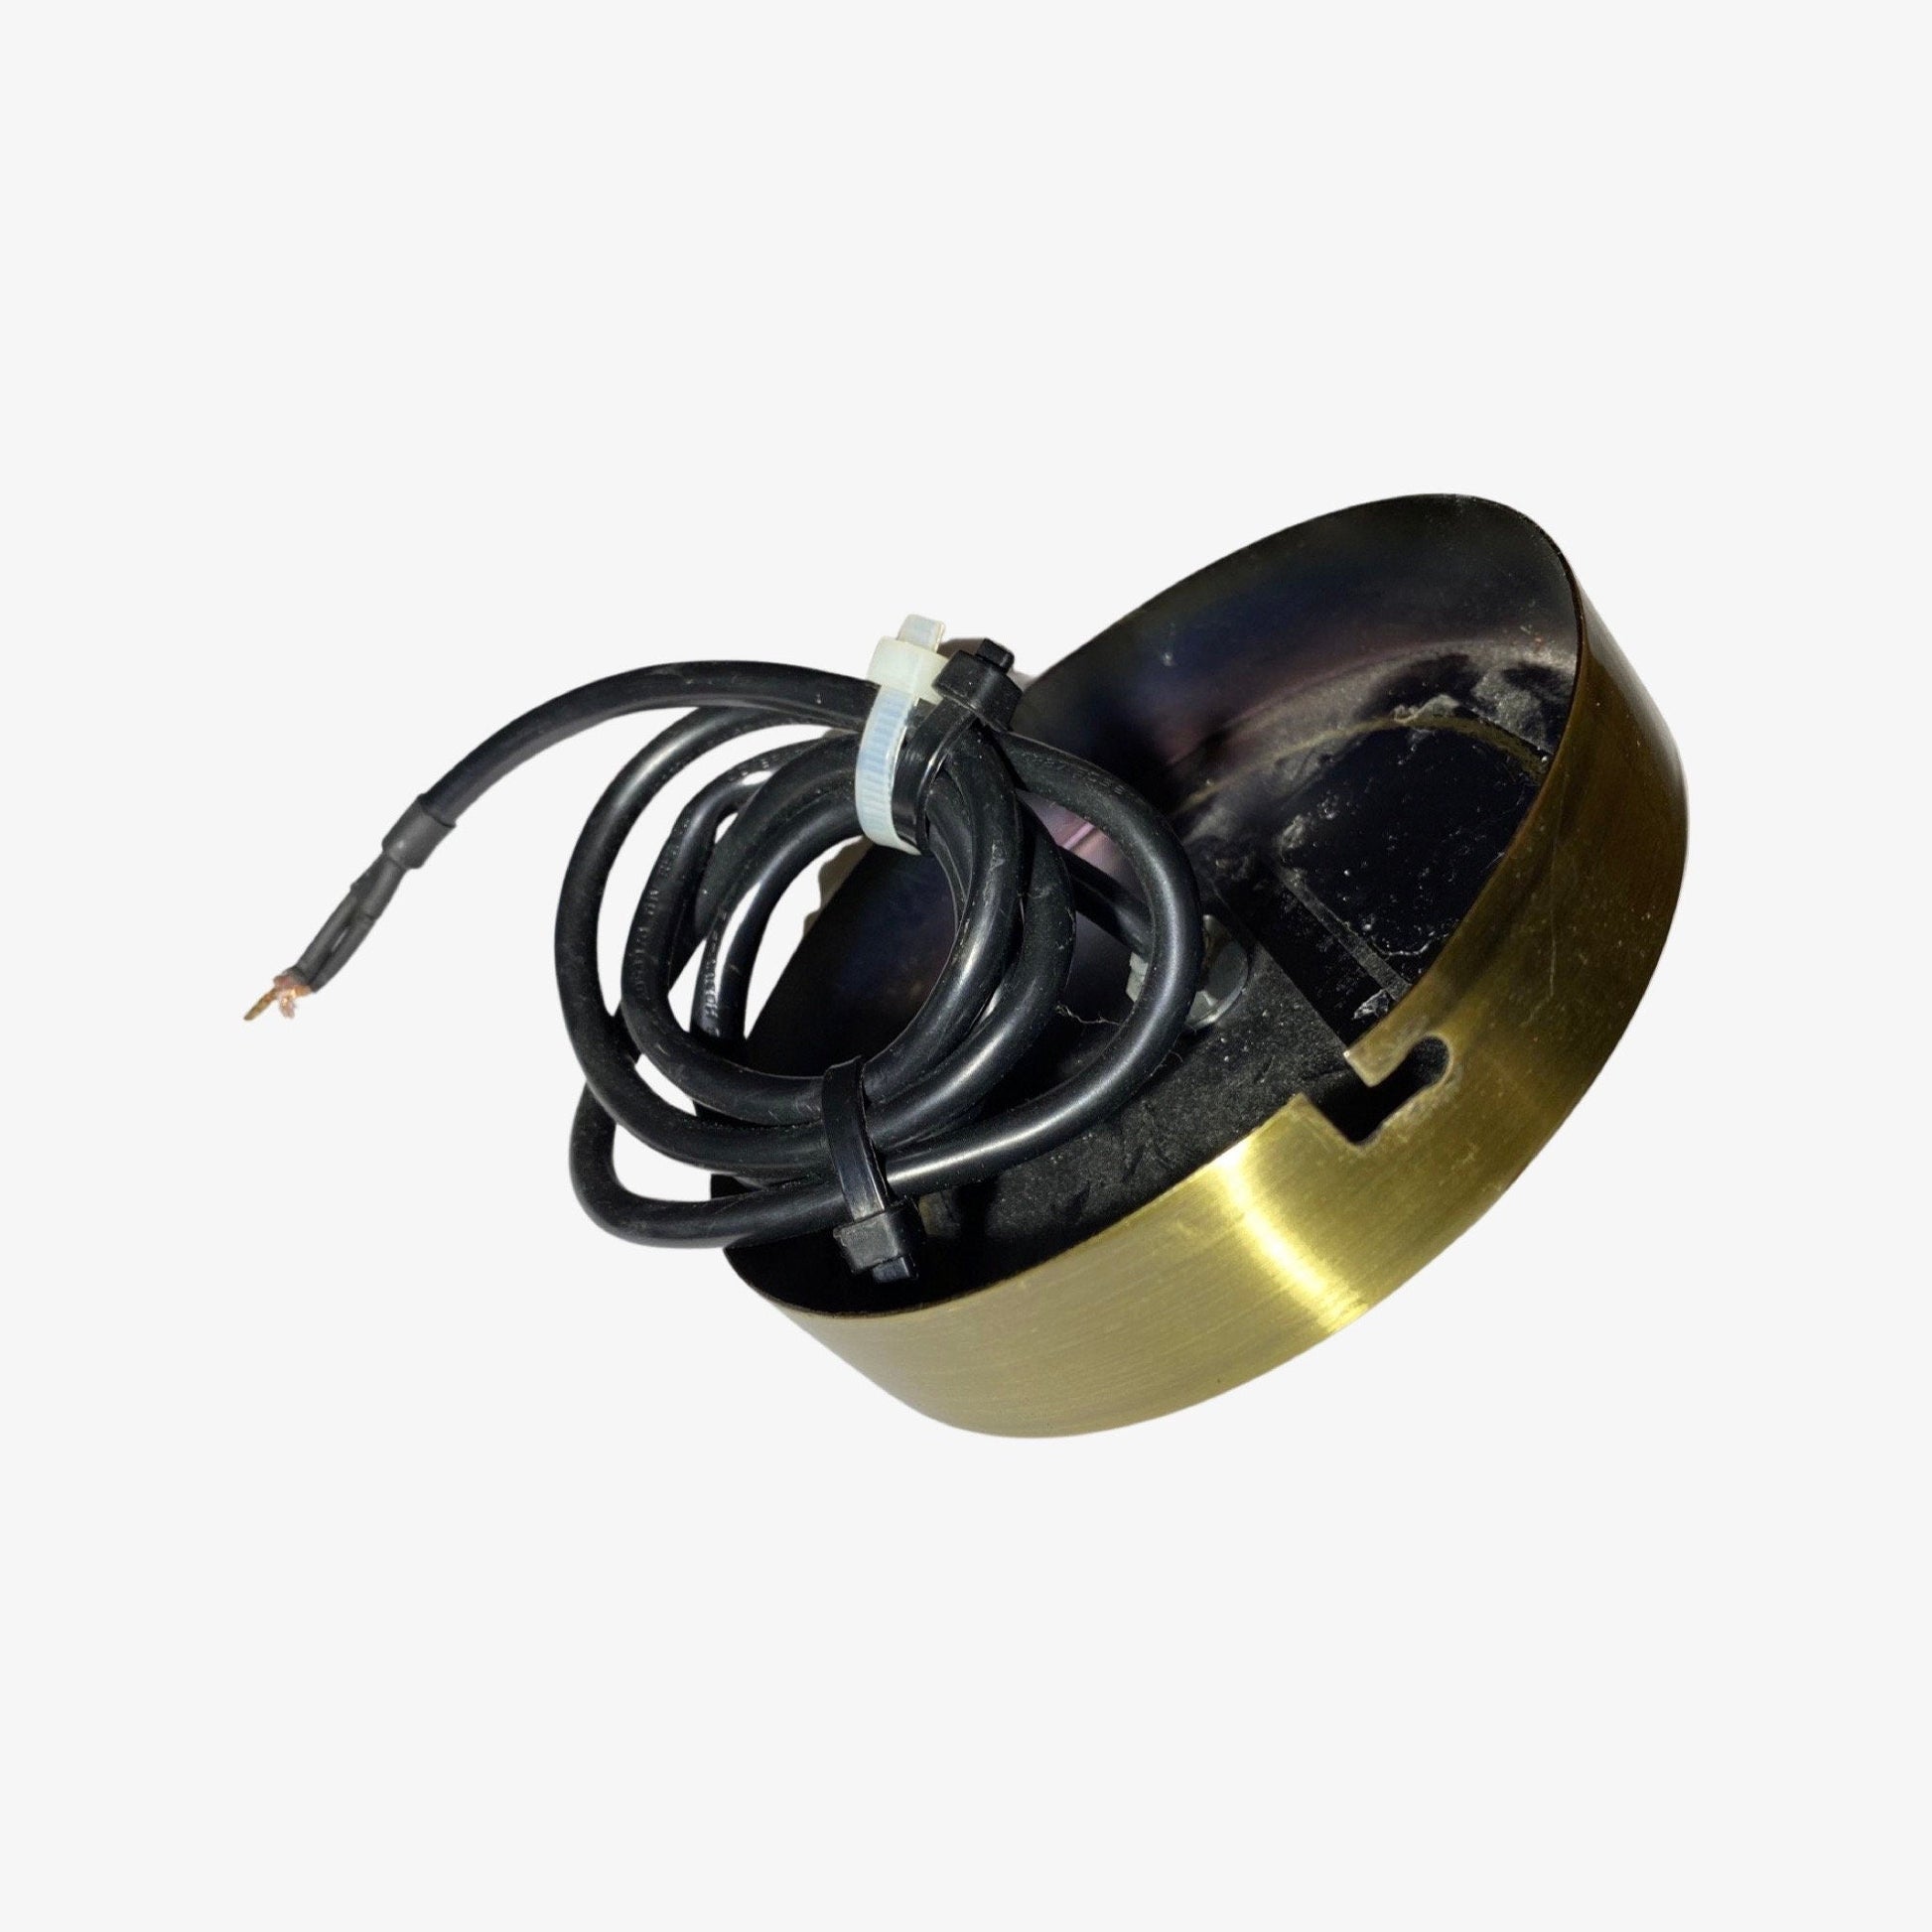 60s Gold Retro Ball Lamp | Vintage Golden Brushed Pendant Light | Dutch Designer Lighting | Metal - FancyVintage.nl -